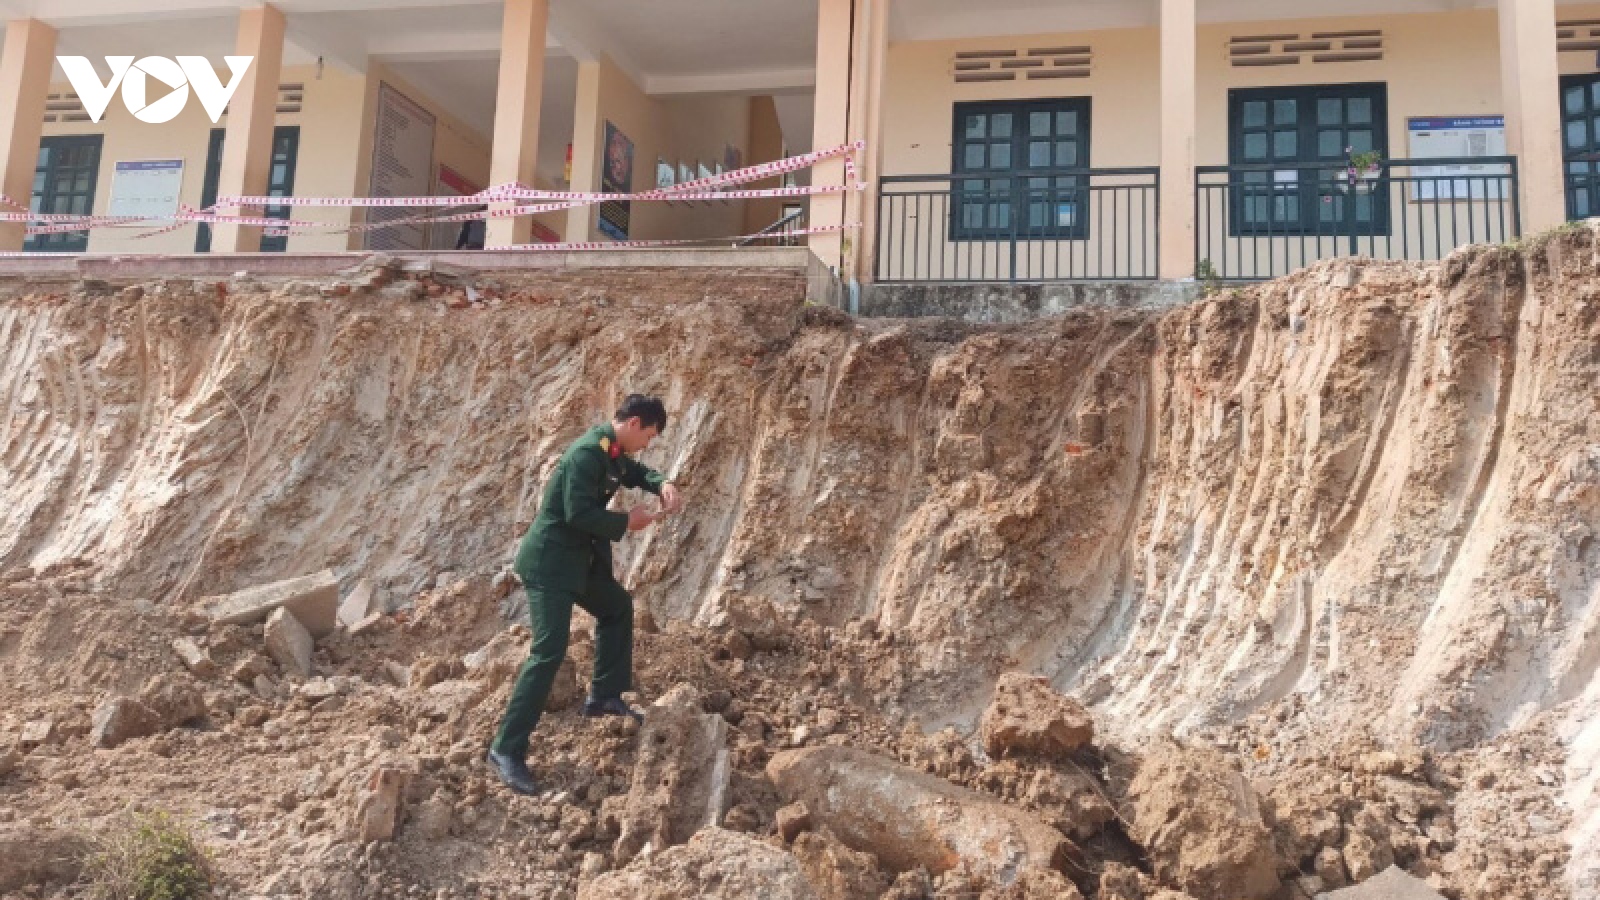  Phát hiện bom "khủng" nặng 350 kg trong trường học ở Điện Biên